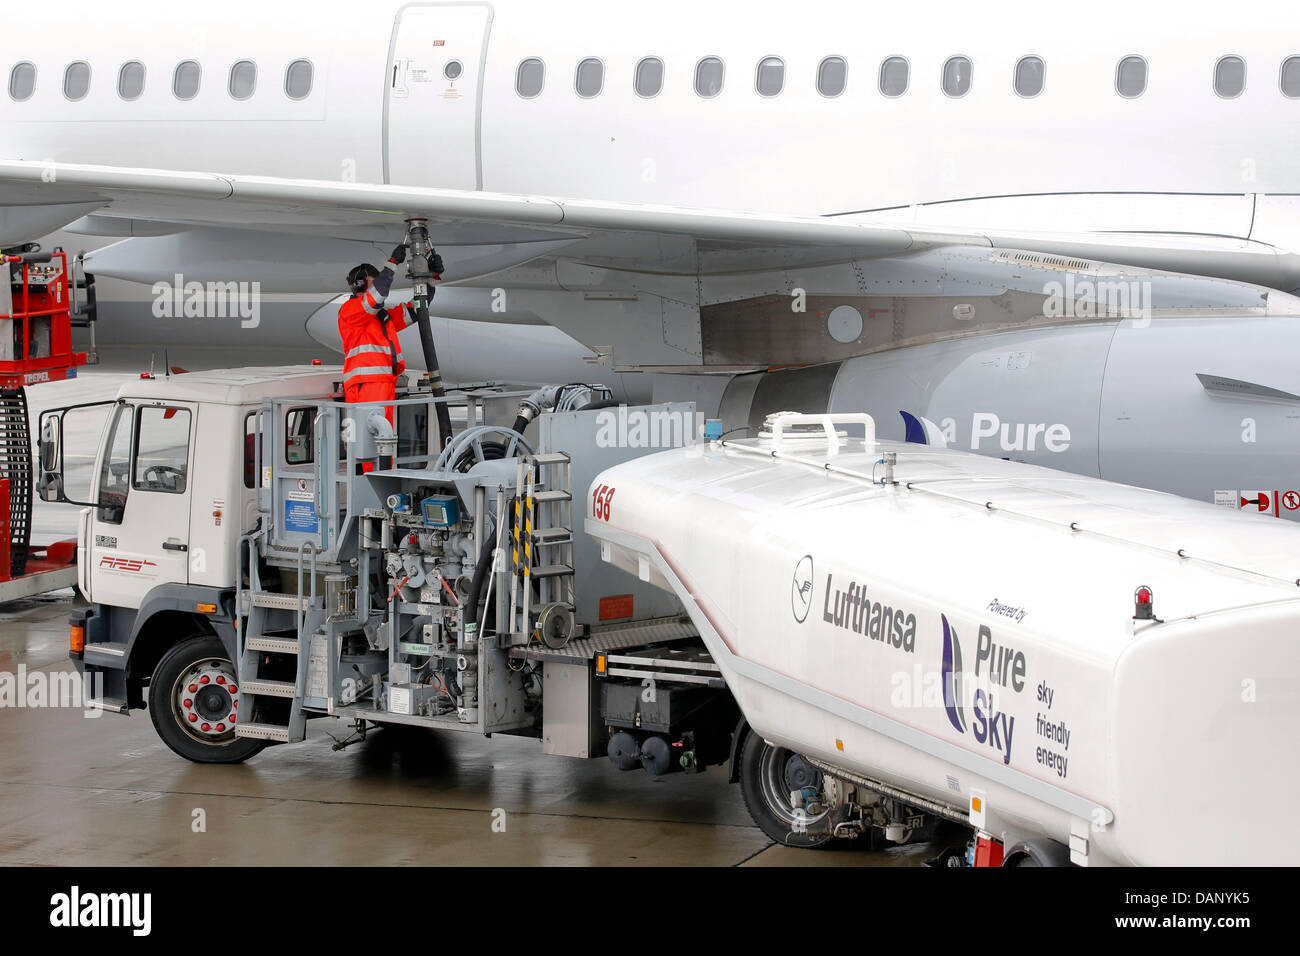 Una stazione di rifornimento di carburanti di attendant fino a Lufthansa Airbus A321-200 con carburante verde ad Amburgo, Germania, 15 luglio 2011. Lufthansa è la prima compagnia di volo di utilizzare carburante verde in tutto il mondo sui voli di linea. Voli Lufthansa sono alimentati con un 50 per cento mix di biocarburante e cherosene. Foto: Markus Scholz Foto Stock